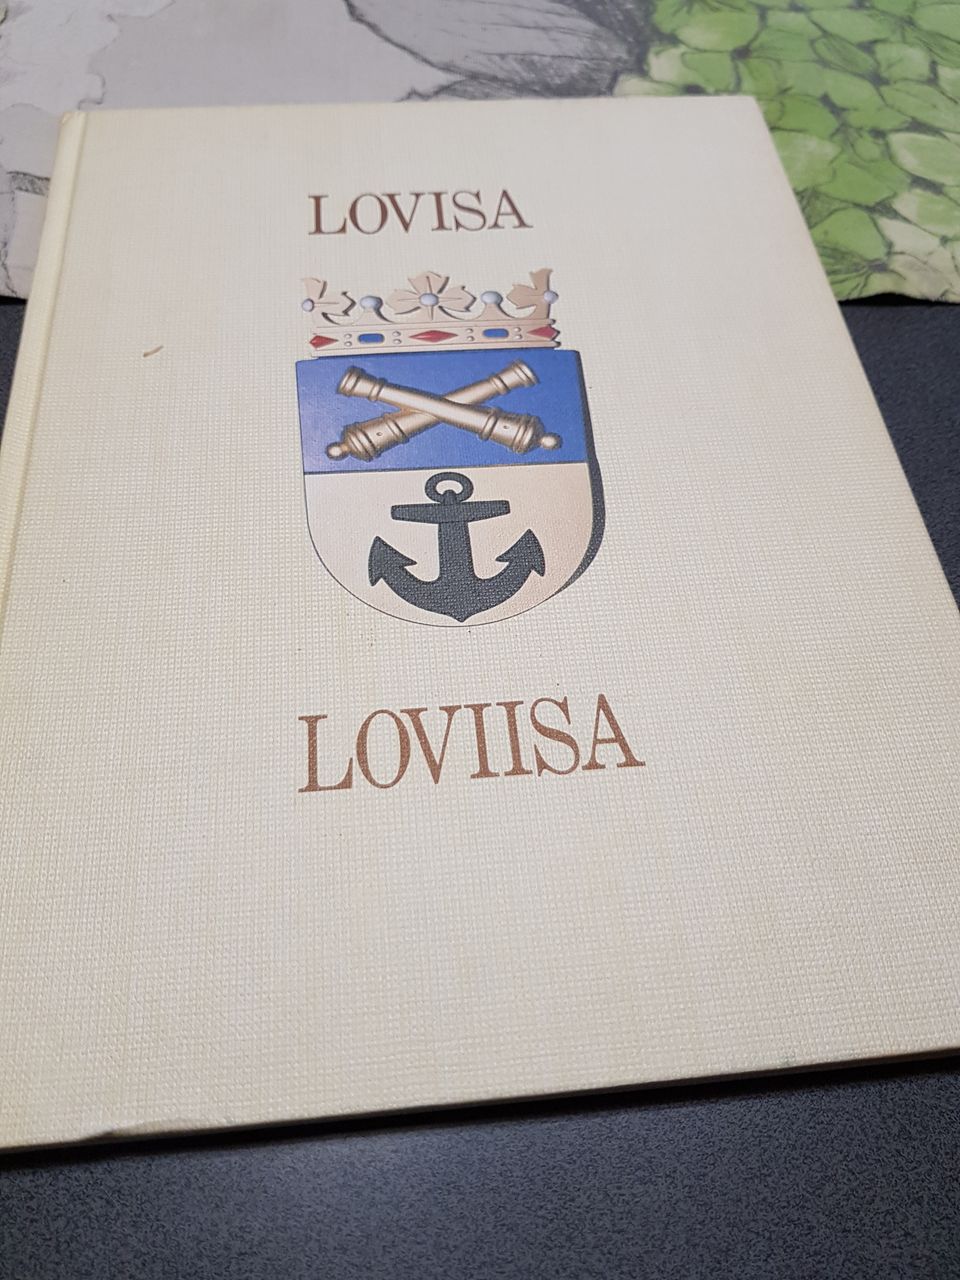 Lovisa- Loviisa